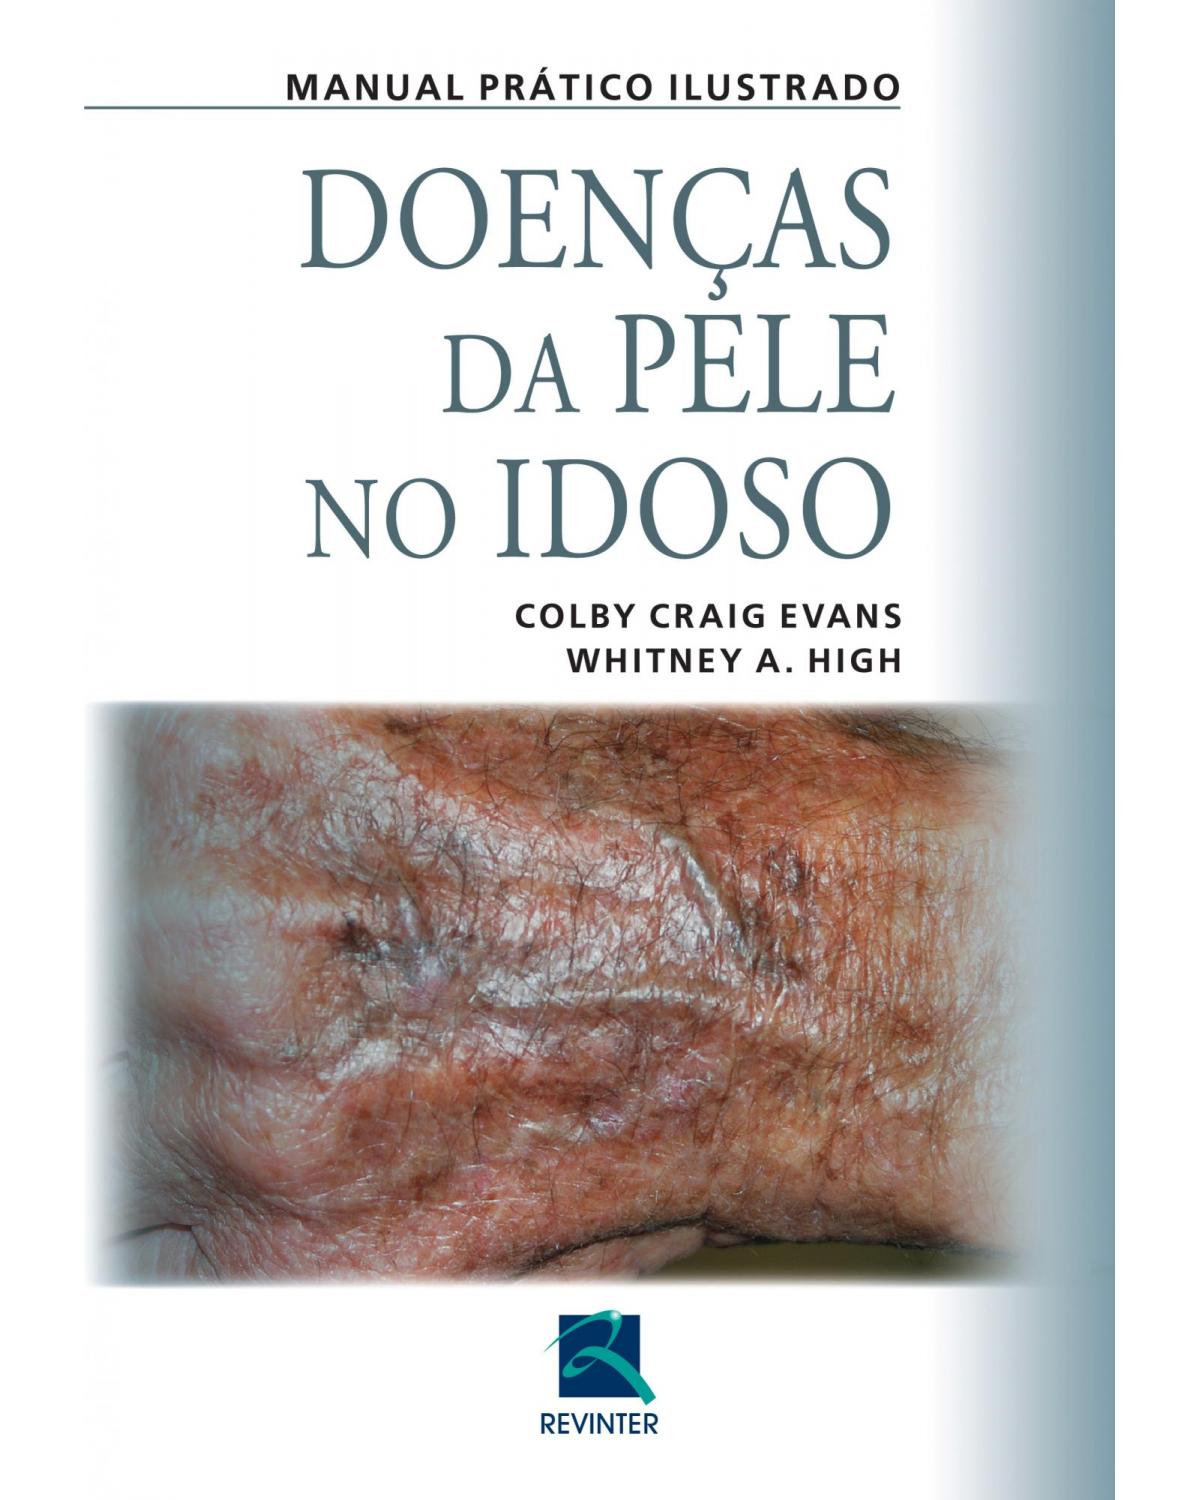 Doenças da pele no idoso: manual prático ilustrado - 1ª Edição | 2015